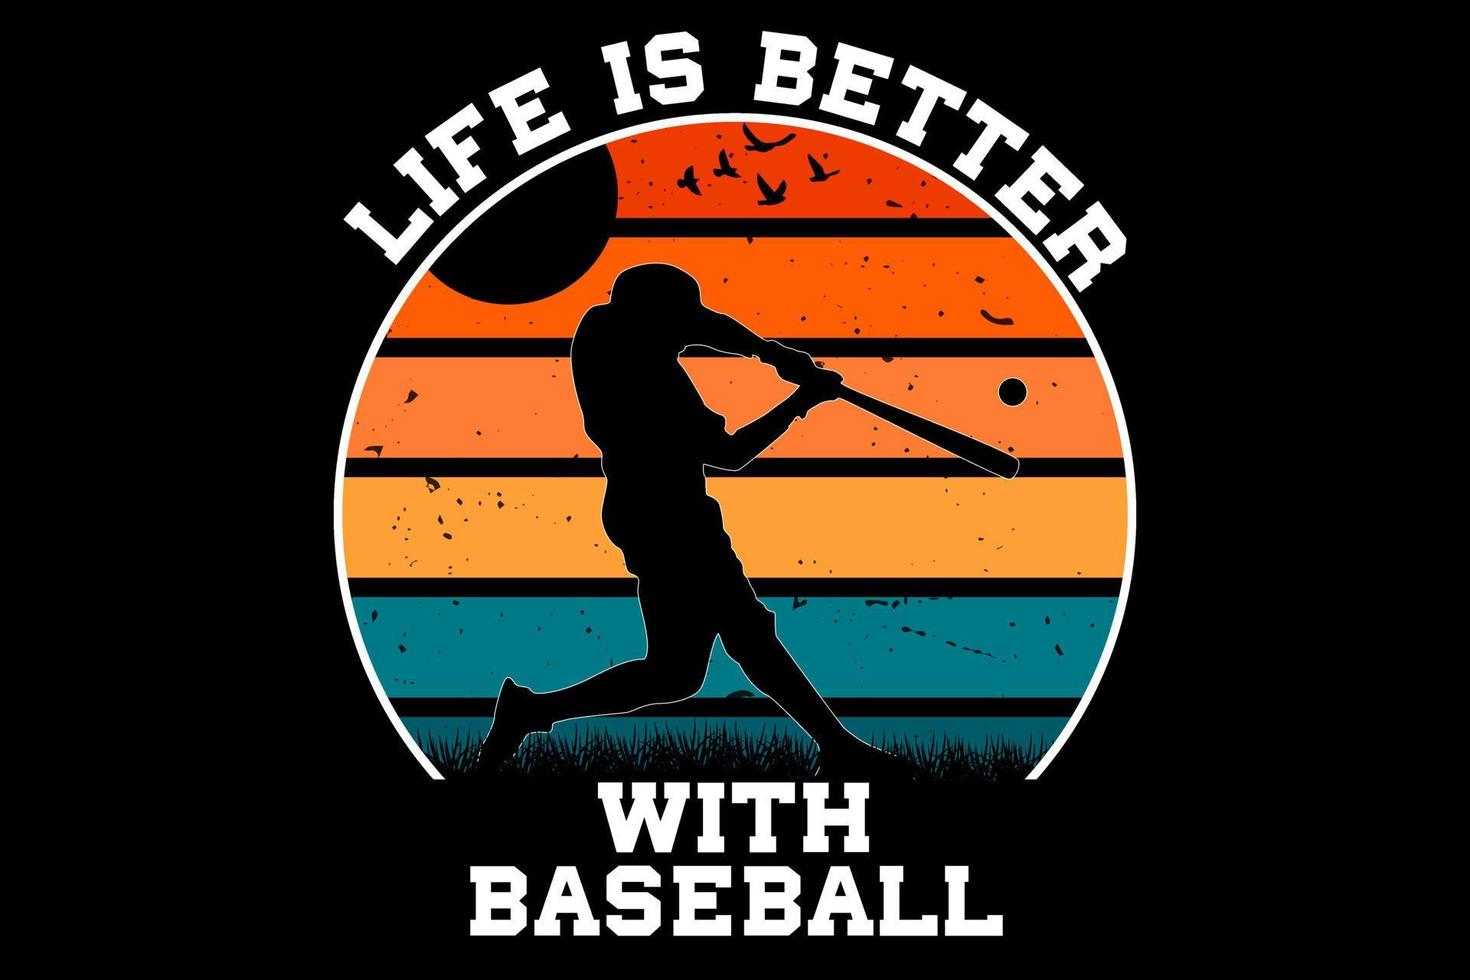 Das Leben ist besser mit Baseball-Retro-Vintage-Design vektor